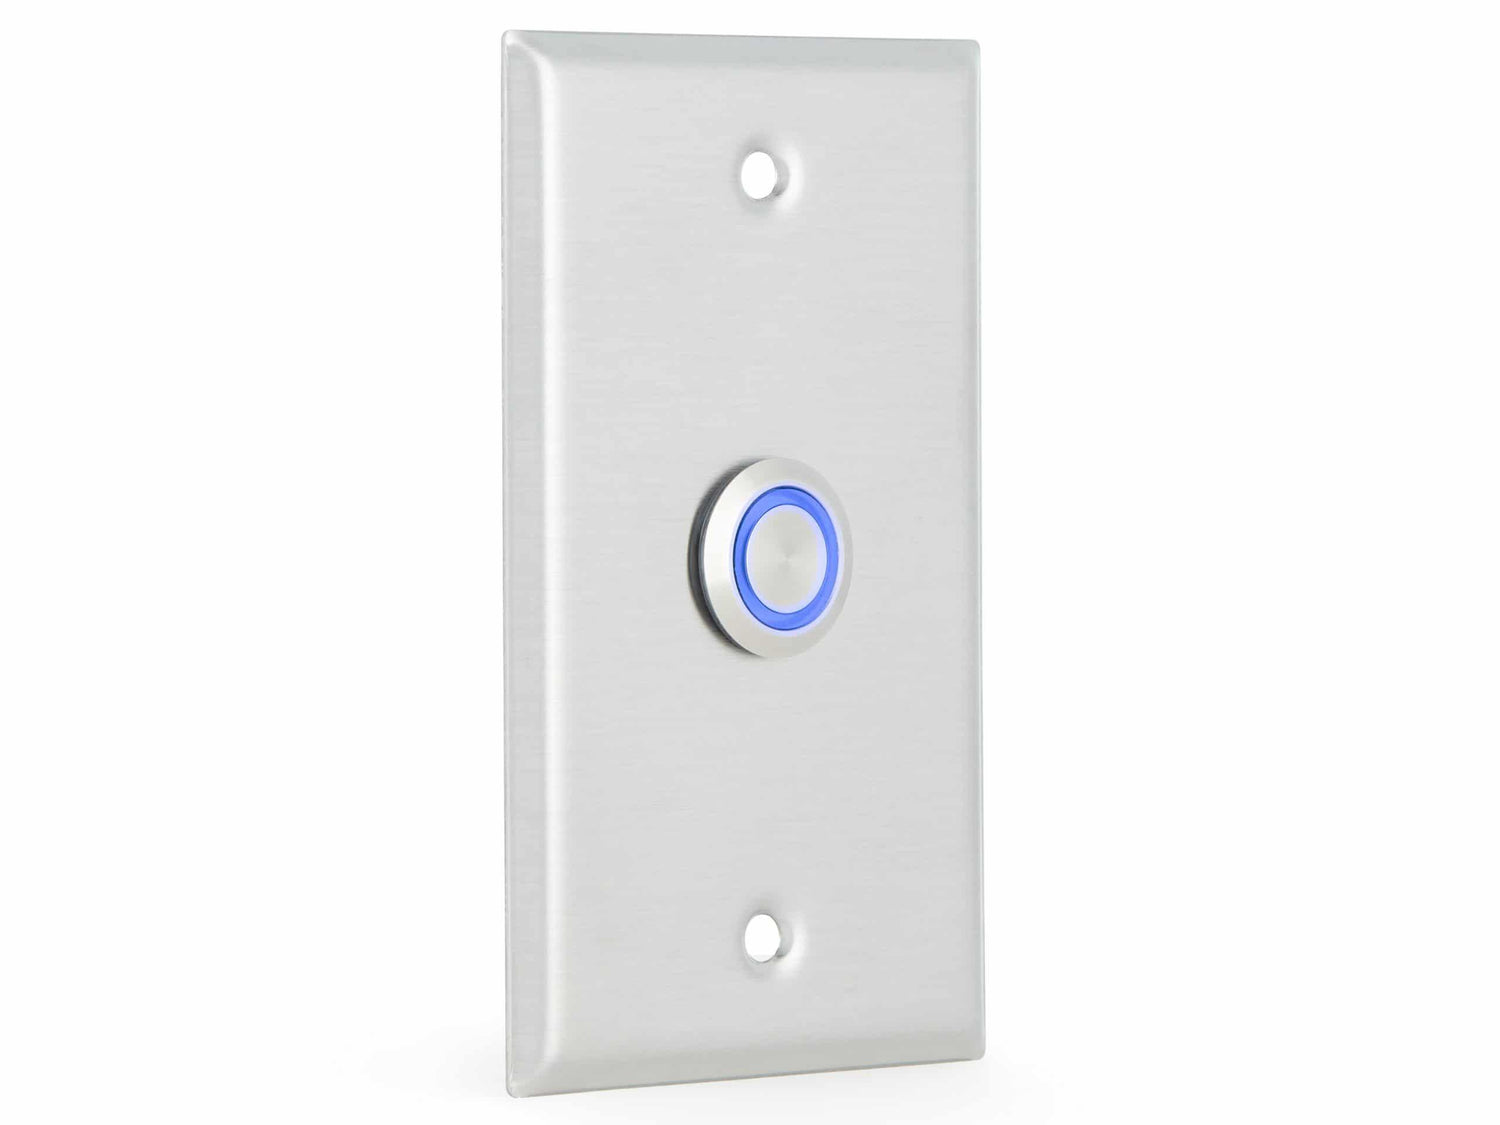 Algo 1203 Call Switch w/ Blue LED Light - ALGO-1203 - New - ALGO-1203 - Reef Telecom